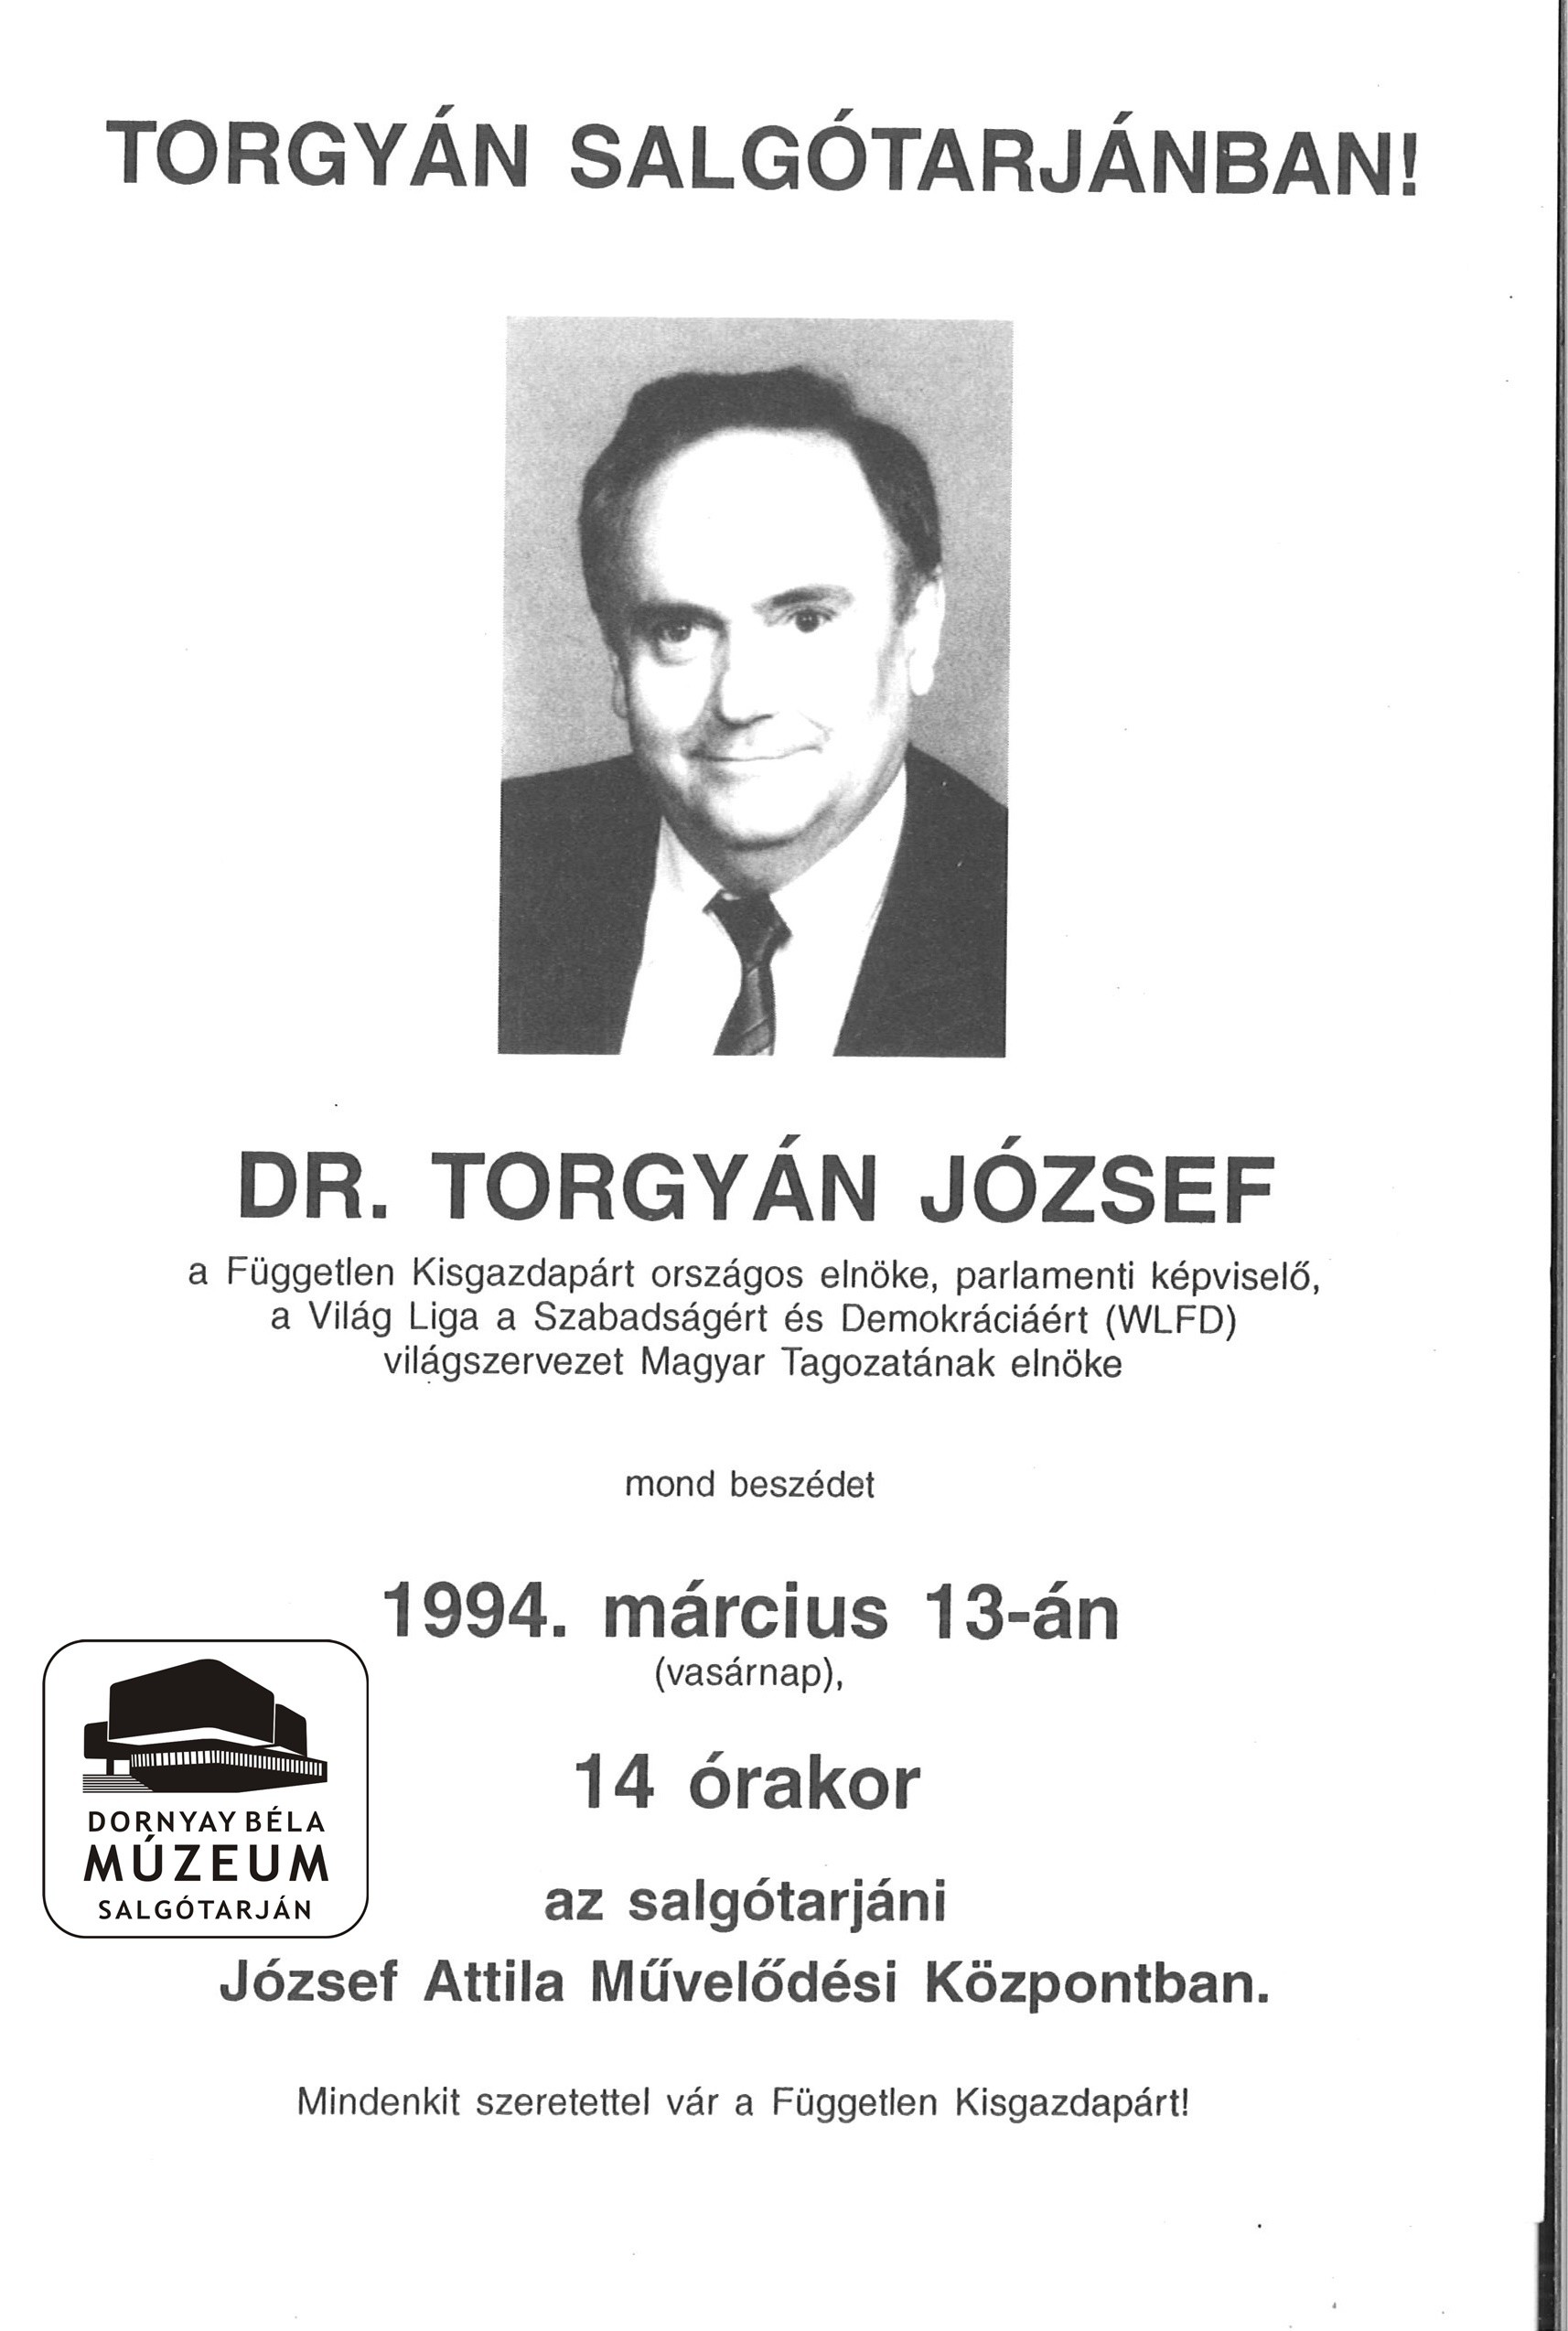 Torgyán Salgótarjánban! (Dornyay Béla Múzeum, Salgótarján CC BY-NC-SA)